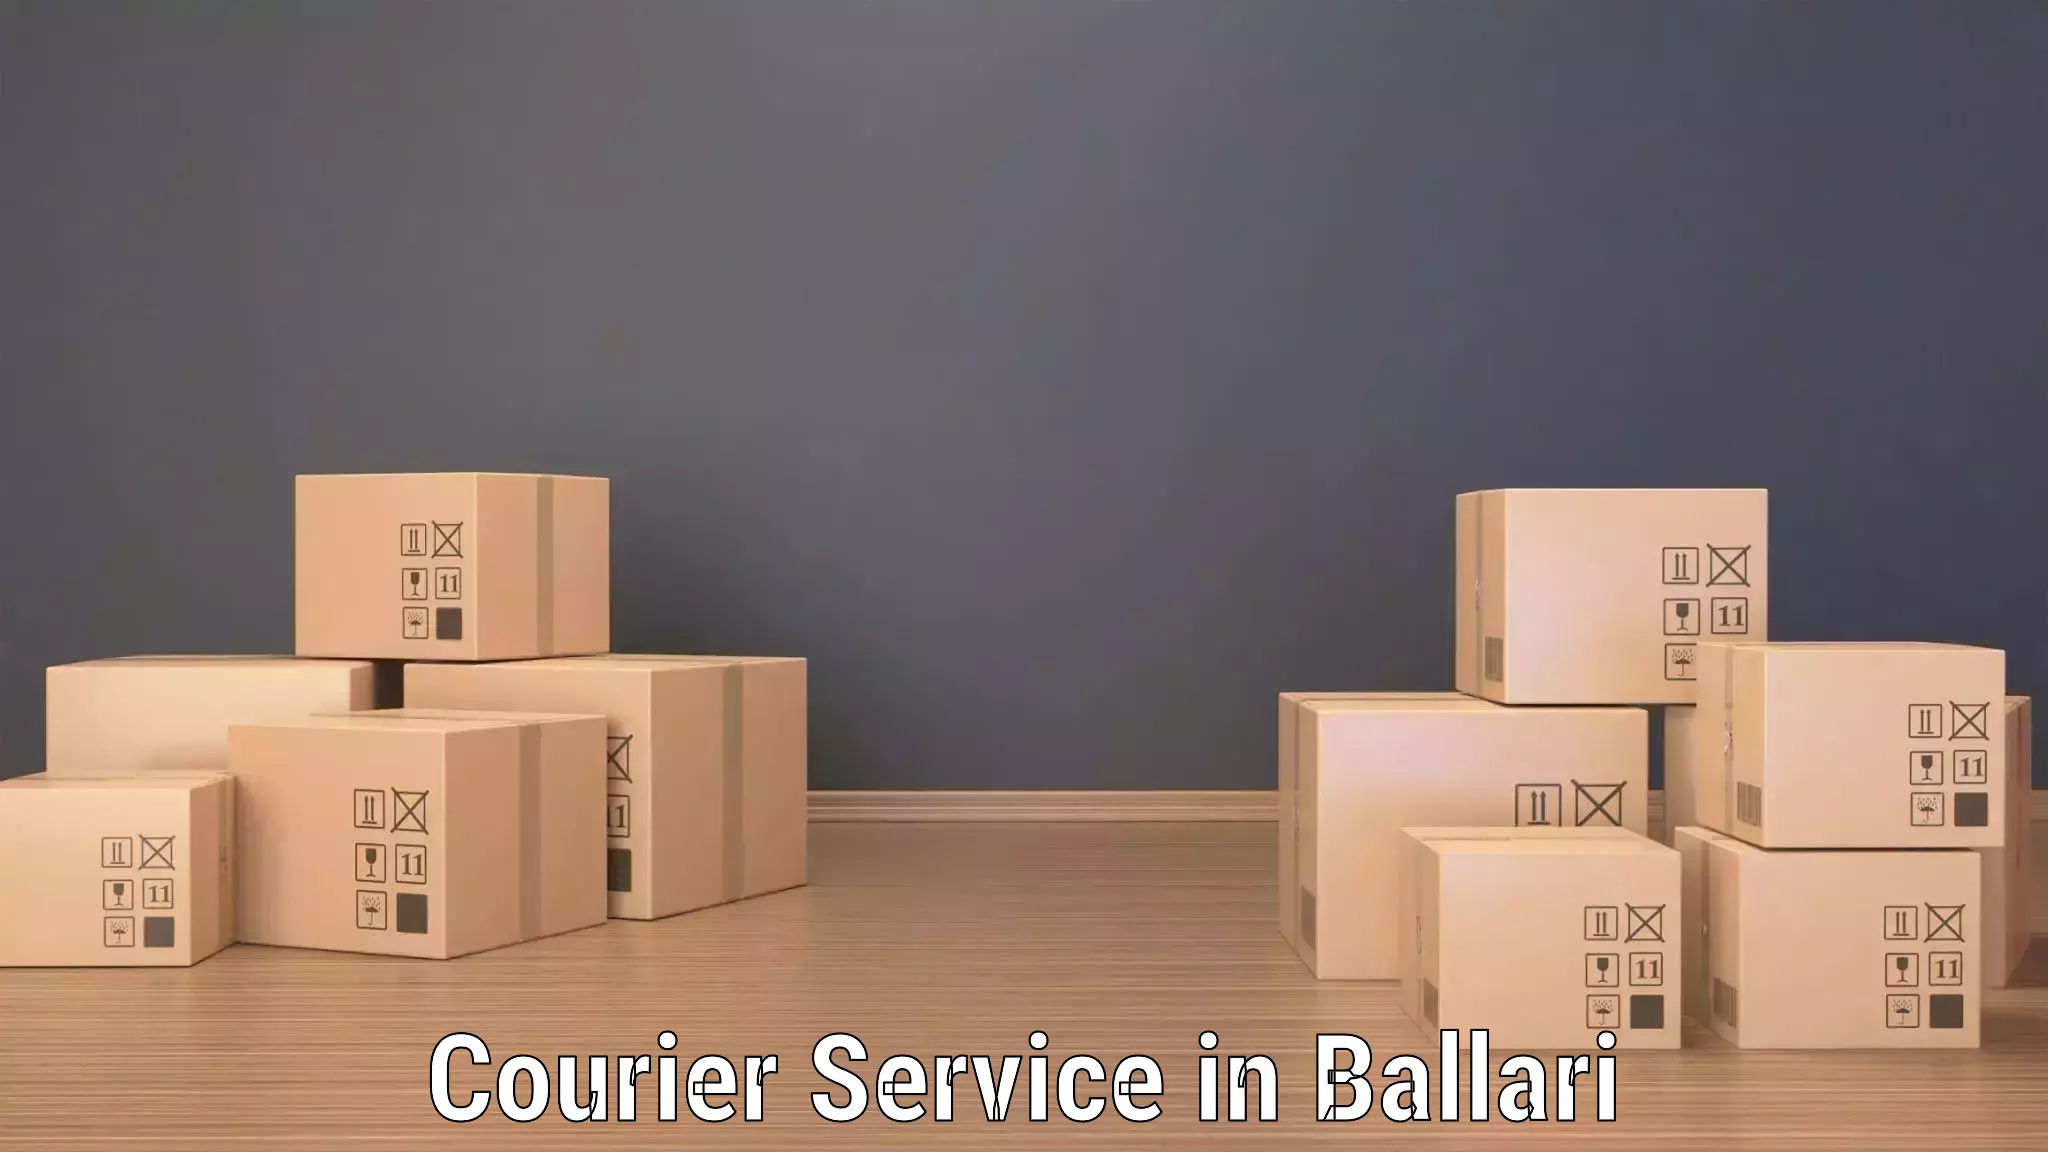 Digital shipping tools in Ballari